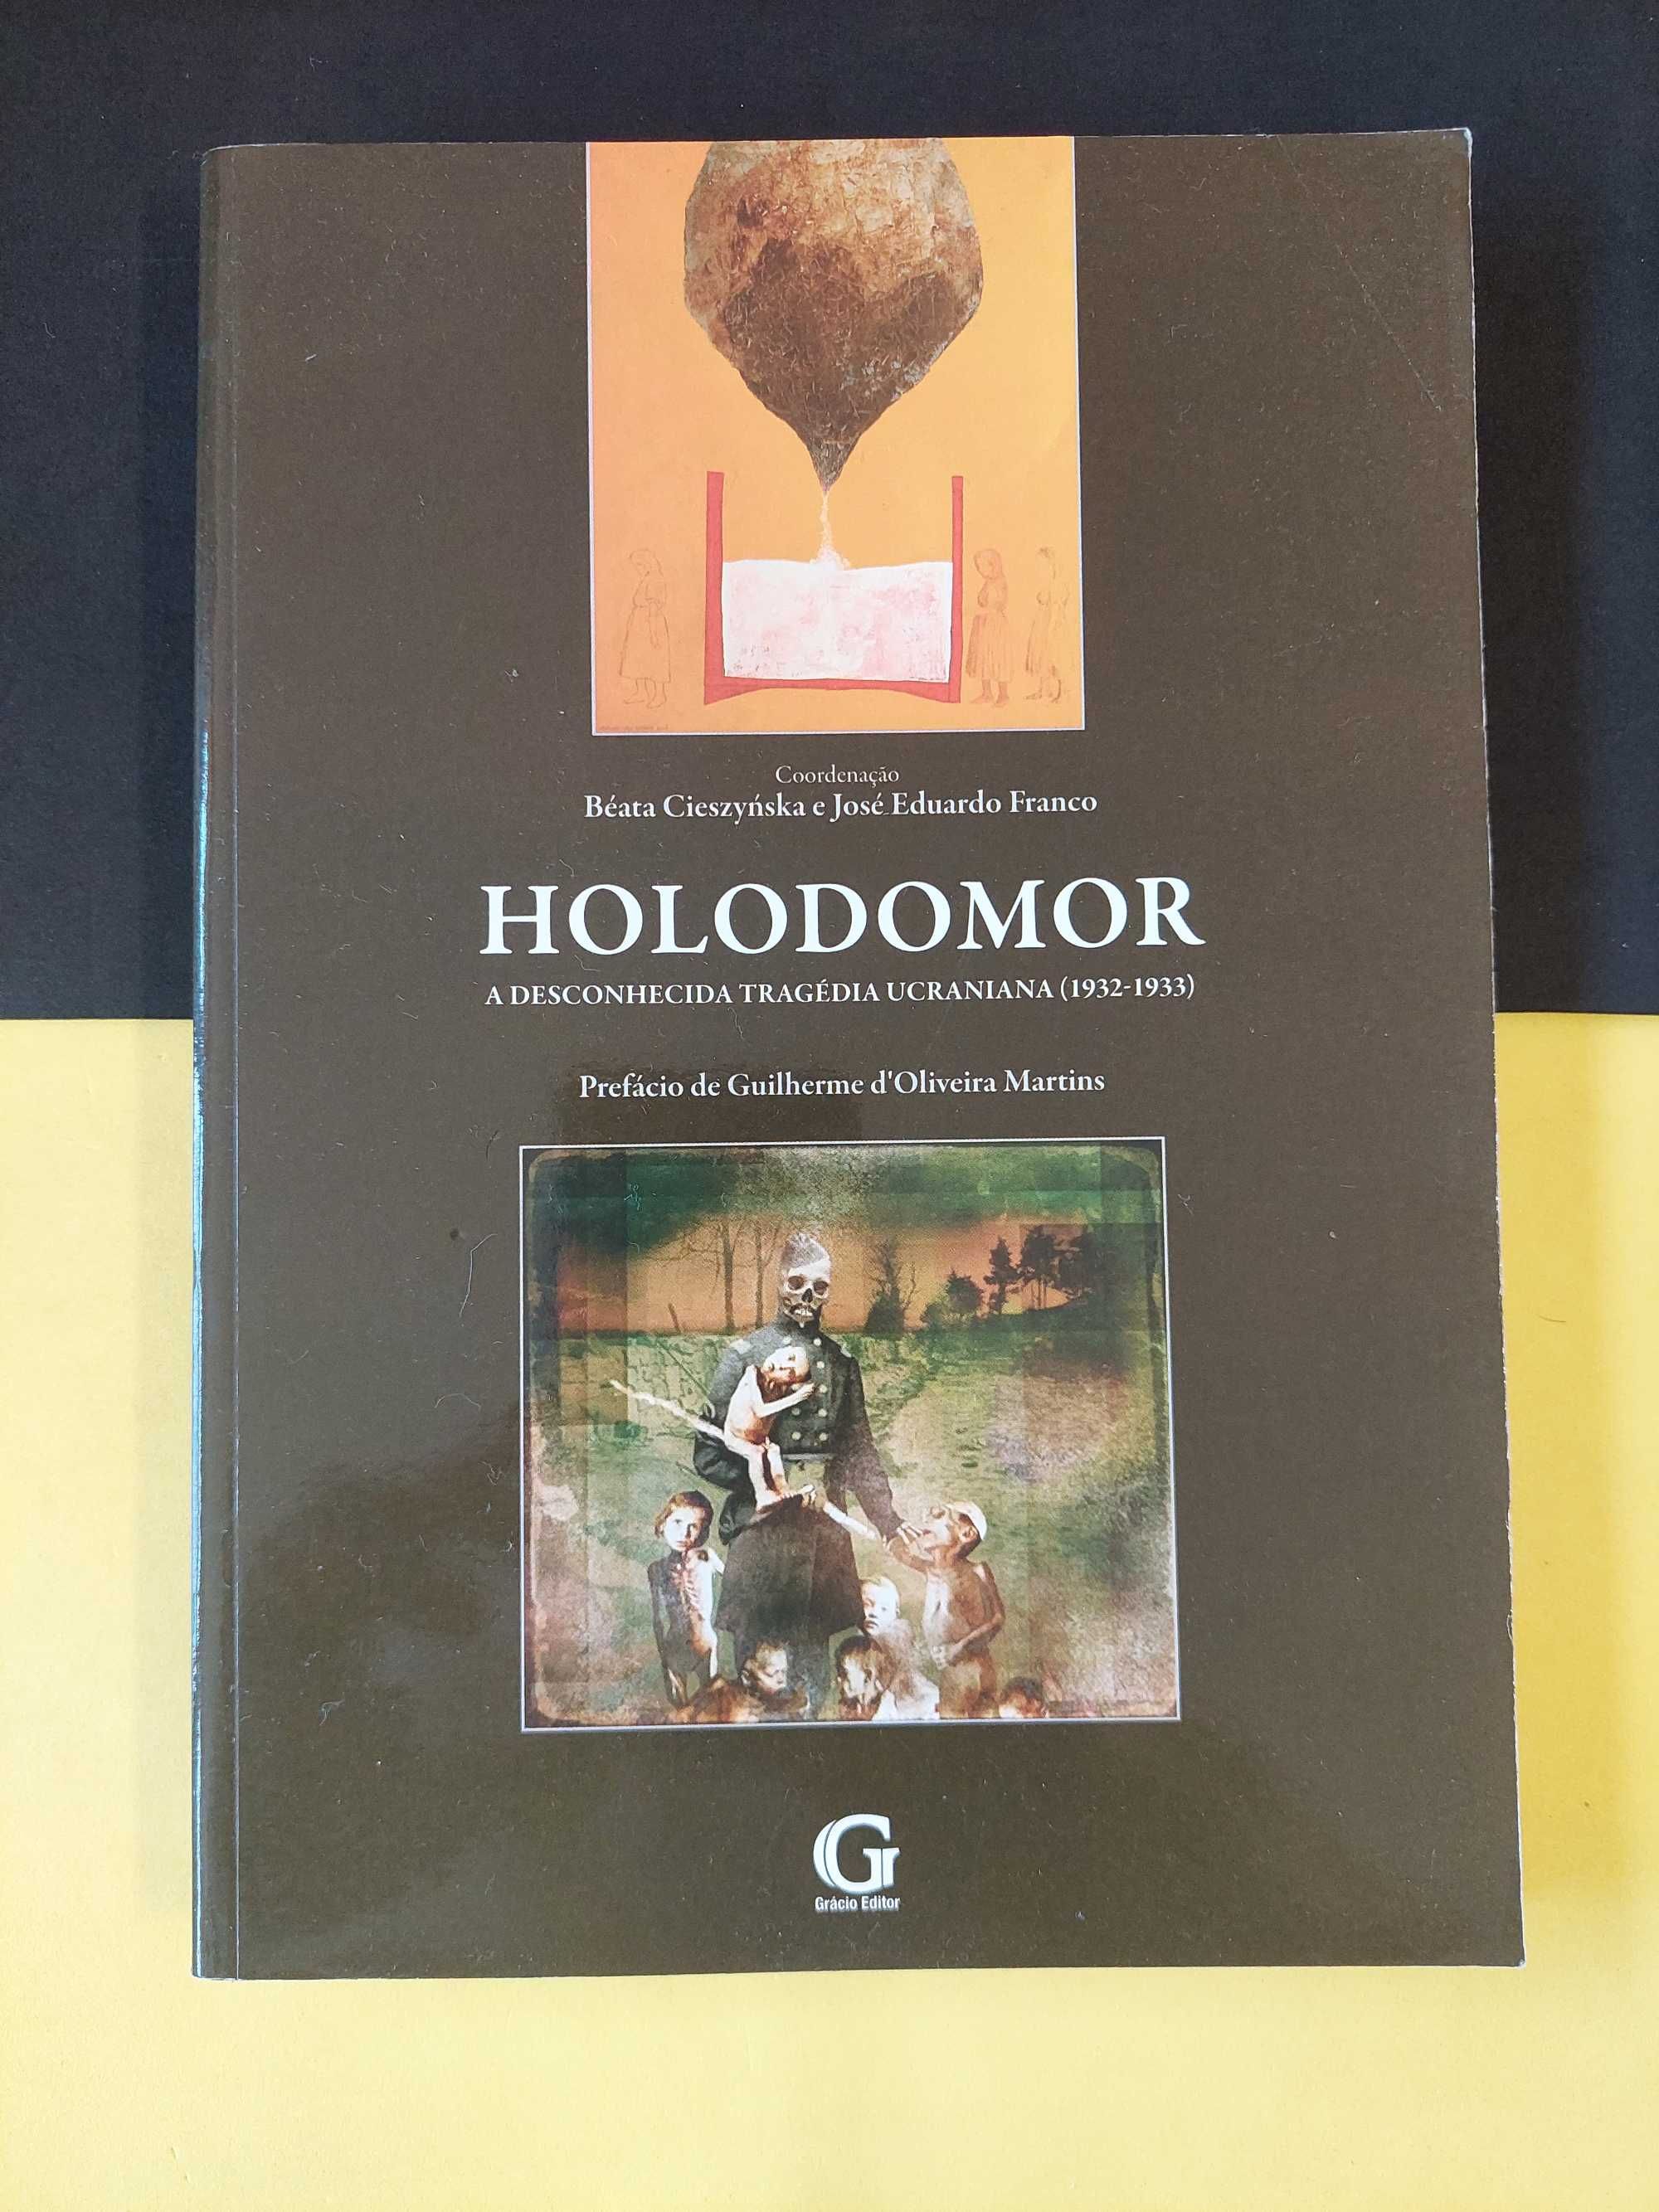 Holodomor: A desconhecida tragédia ucraniana (1932/1933)